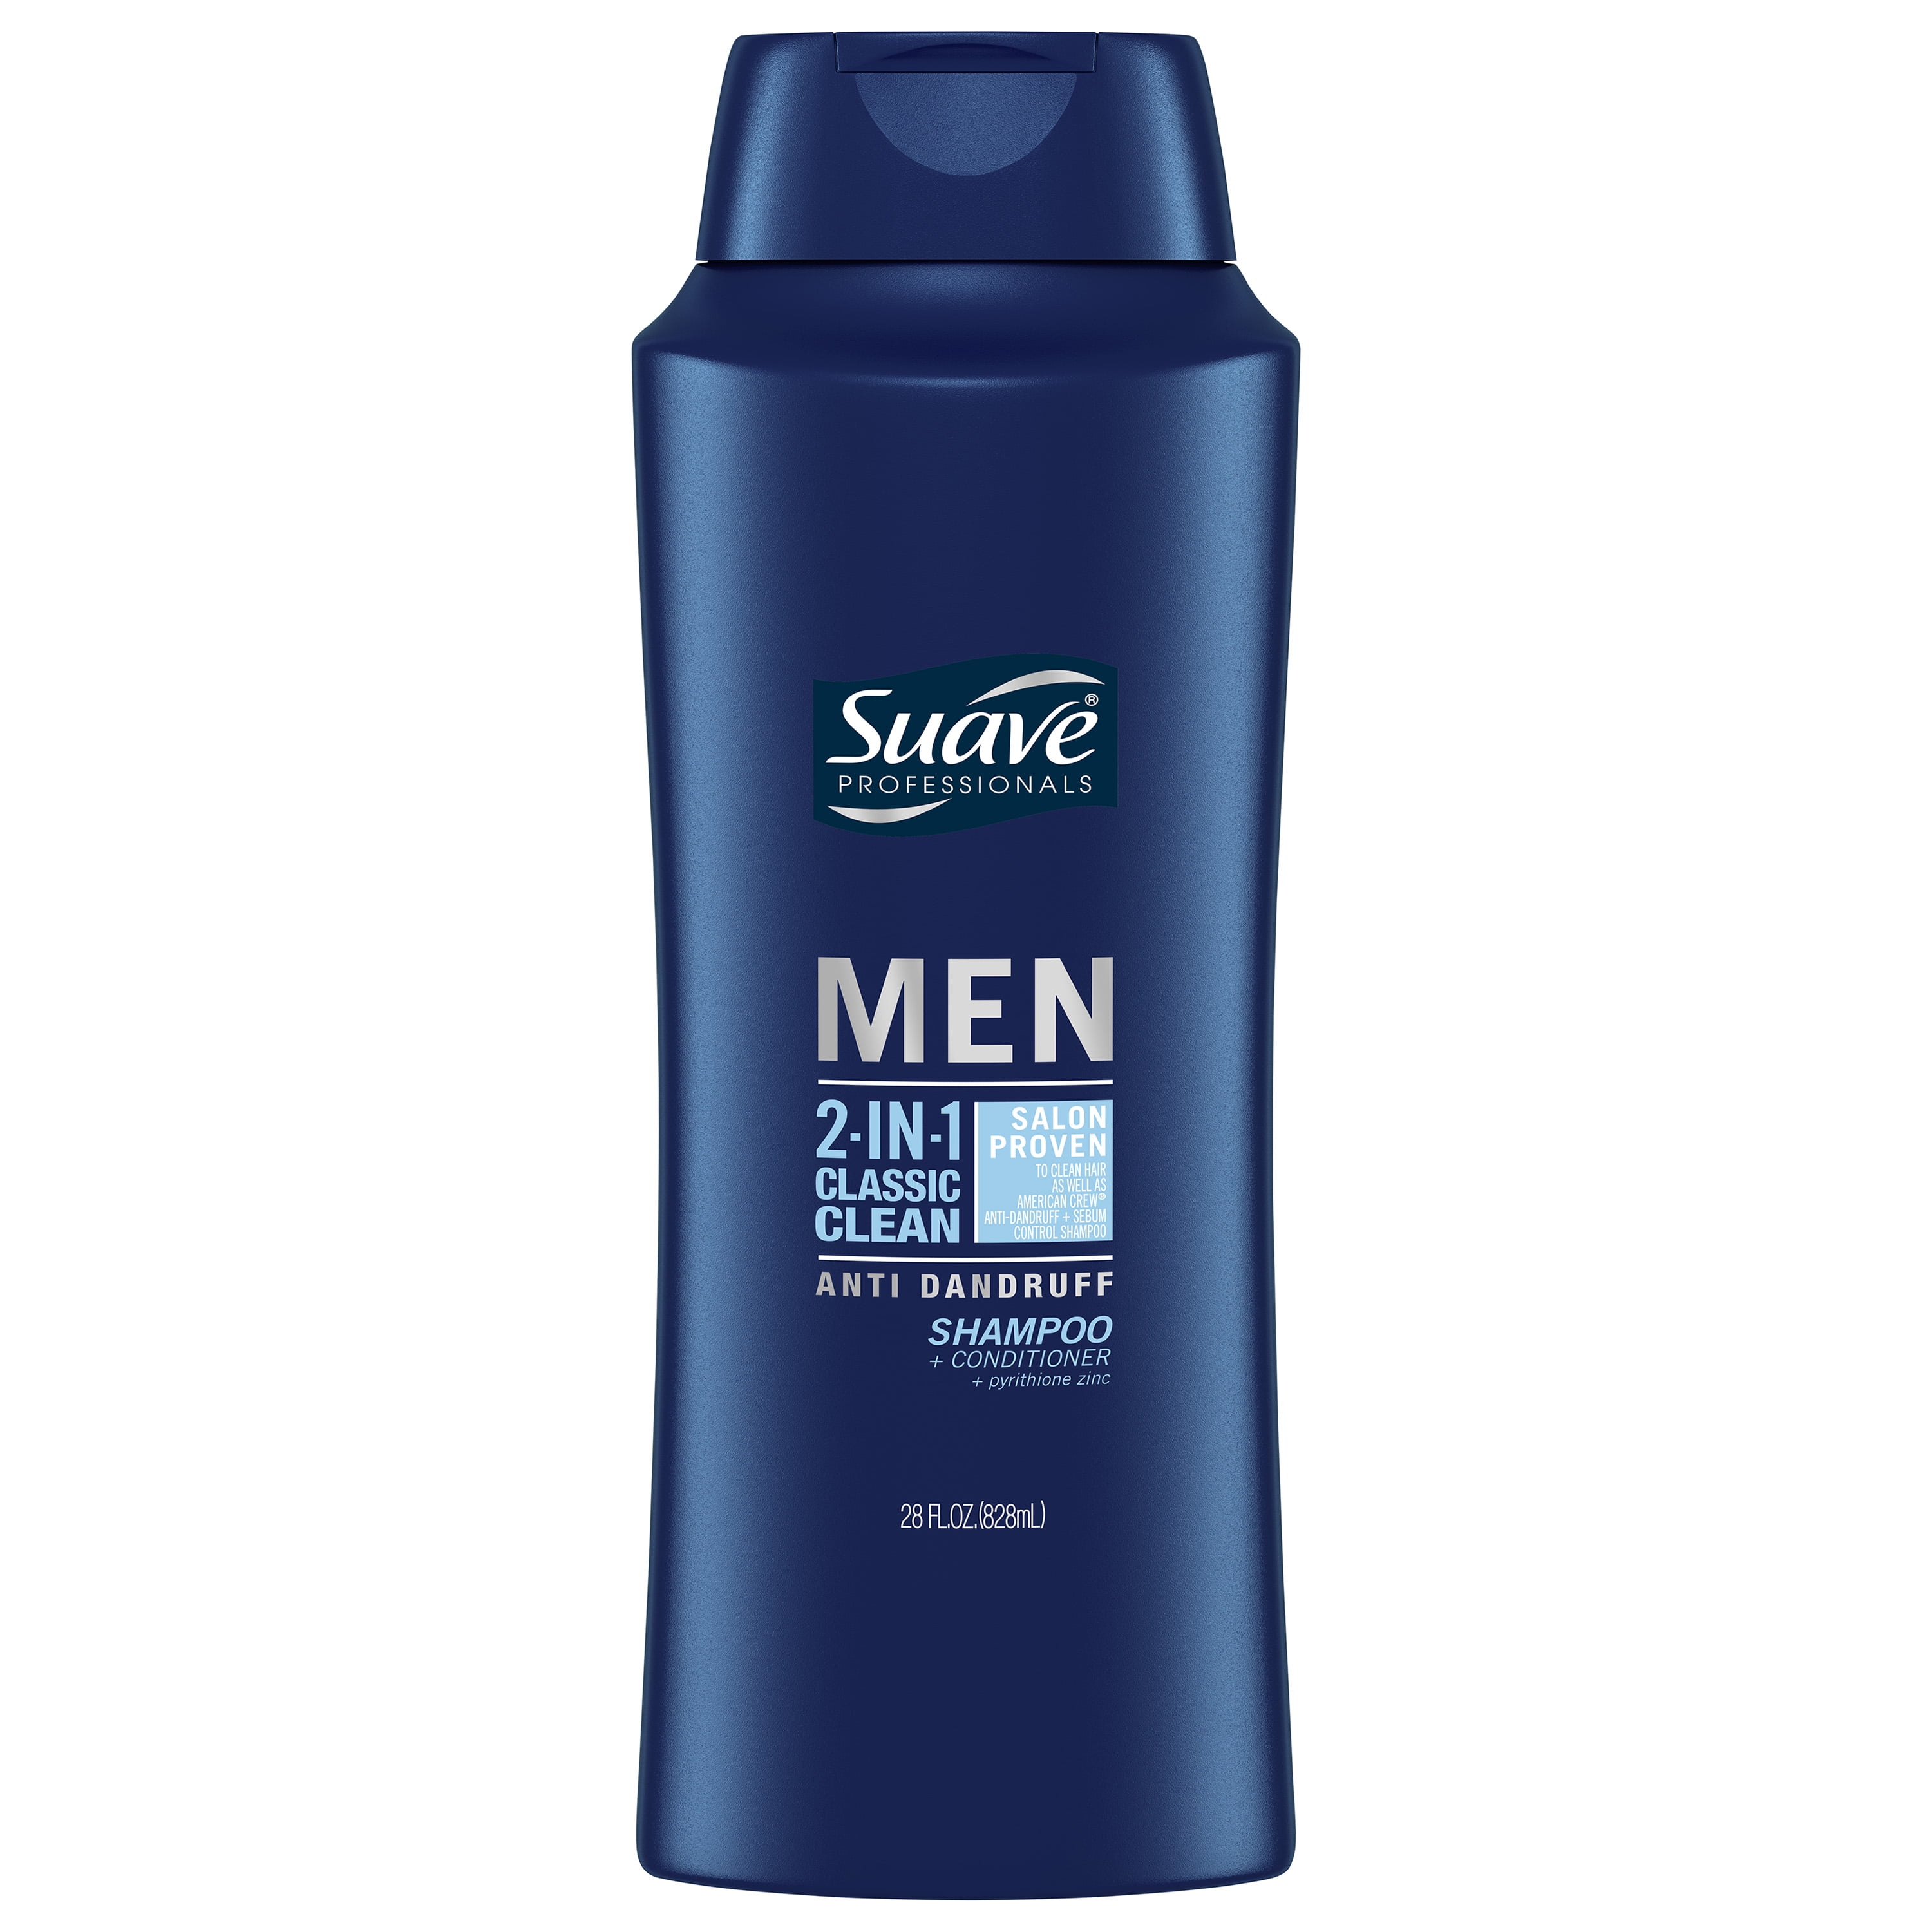 Suave Professionals Classic Clean 2in1 Dandruff Relief Shampoo Plus Conditioner, 28 fl oz